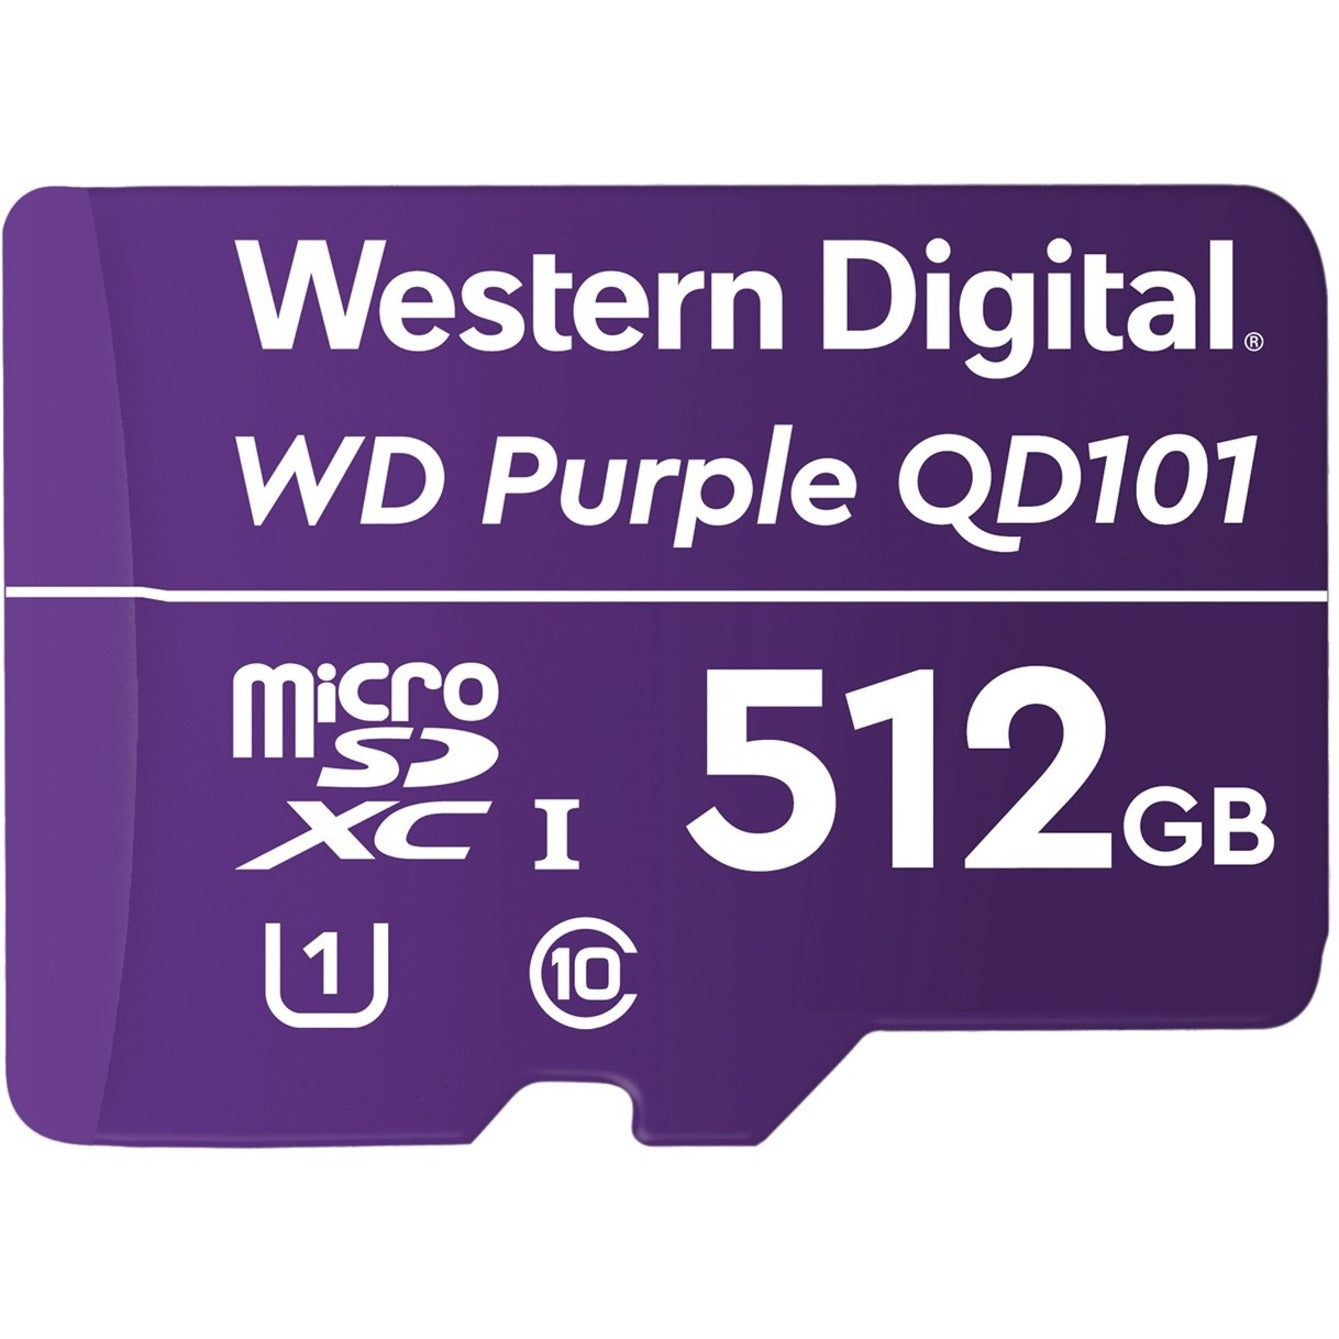 Western Digital WDD512G1P0C Purple™ SC QD101 512GB microSDXC 3 Year Limited Warranty   Western Digital > Western Digital Purple > Púrpura SC > SC QD101 > QD101 512GB > 512GB microSDXC > microSDXC 3 Year Limited Warranty > Garantía Limitada de 3 años